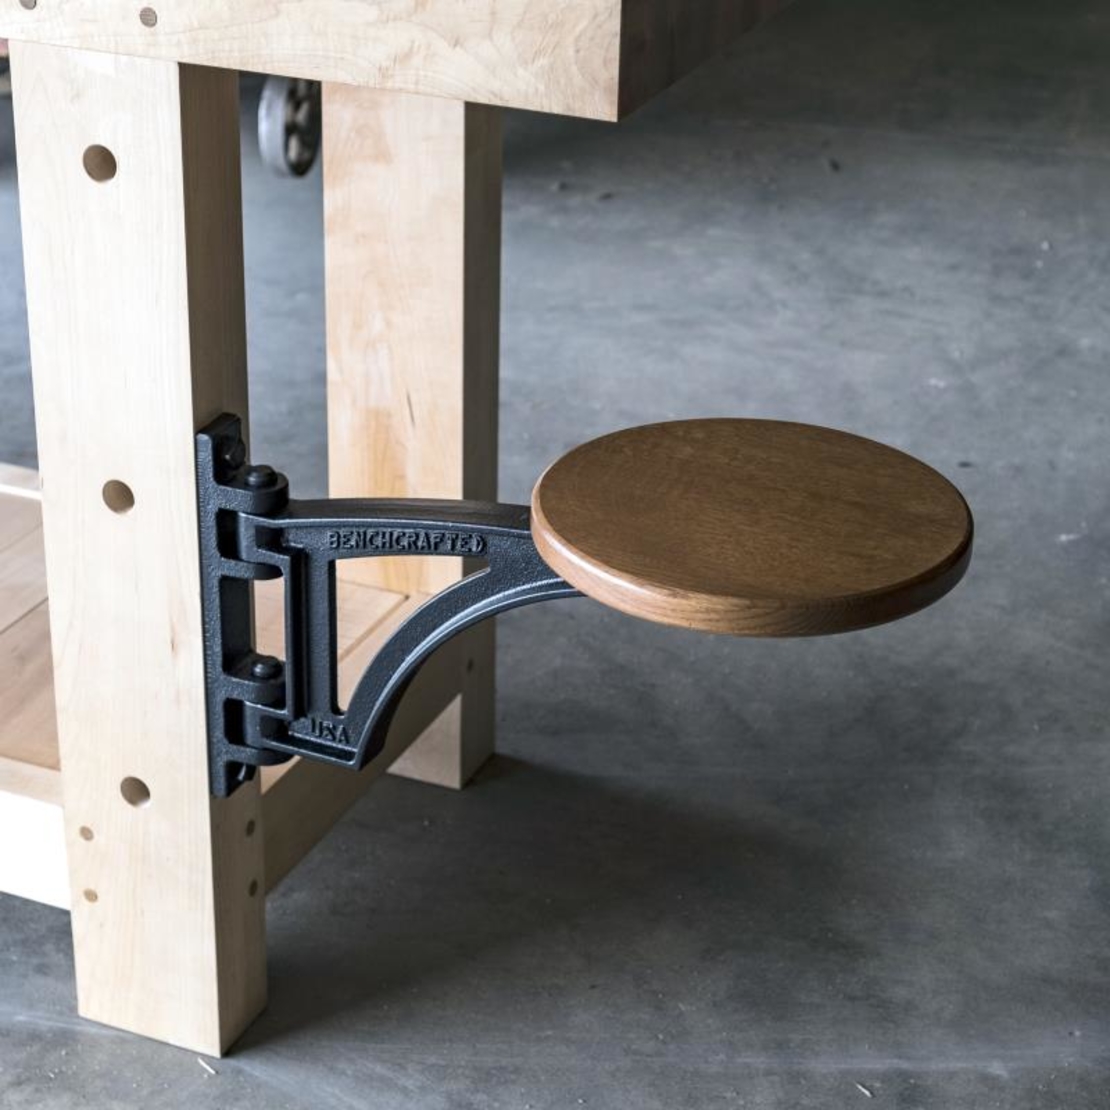 מושב ברזל יצוק לשולחן עבודה- רק פרזול